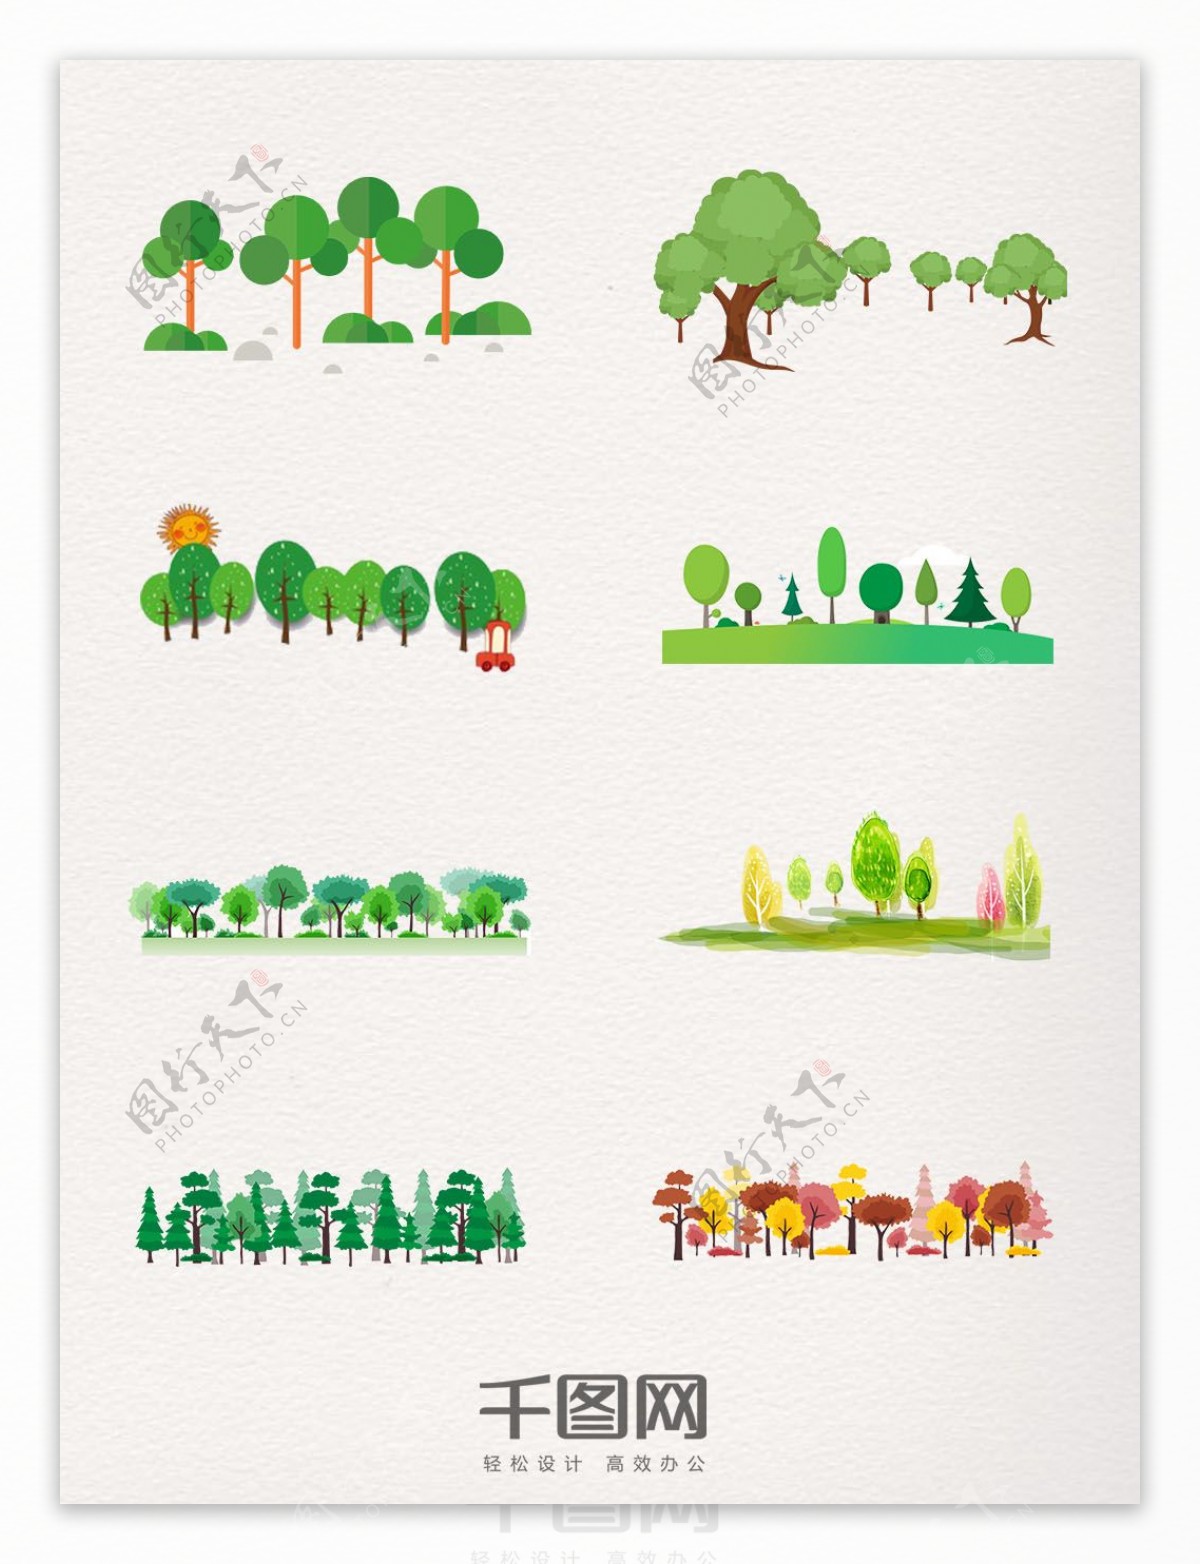 彩色卡通树木群图案